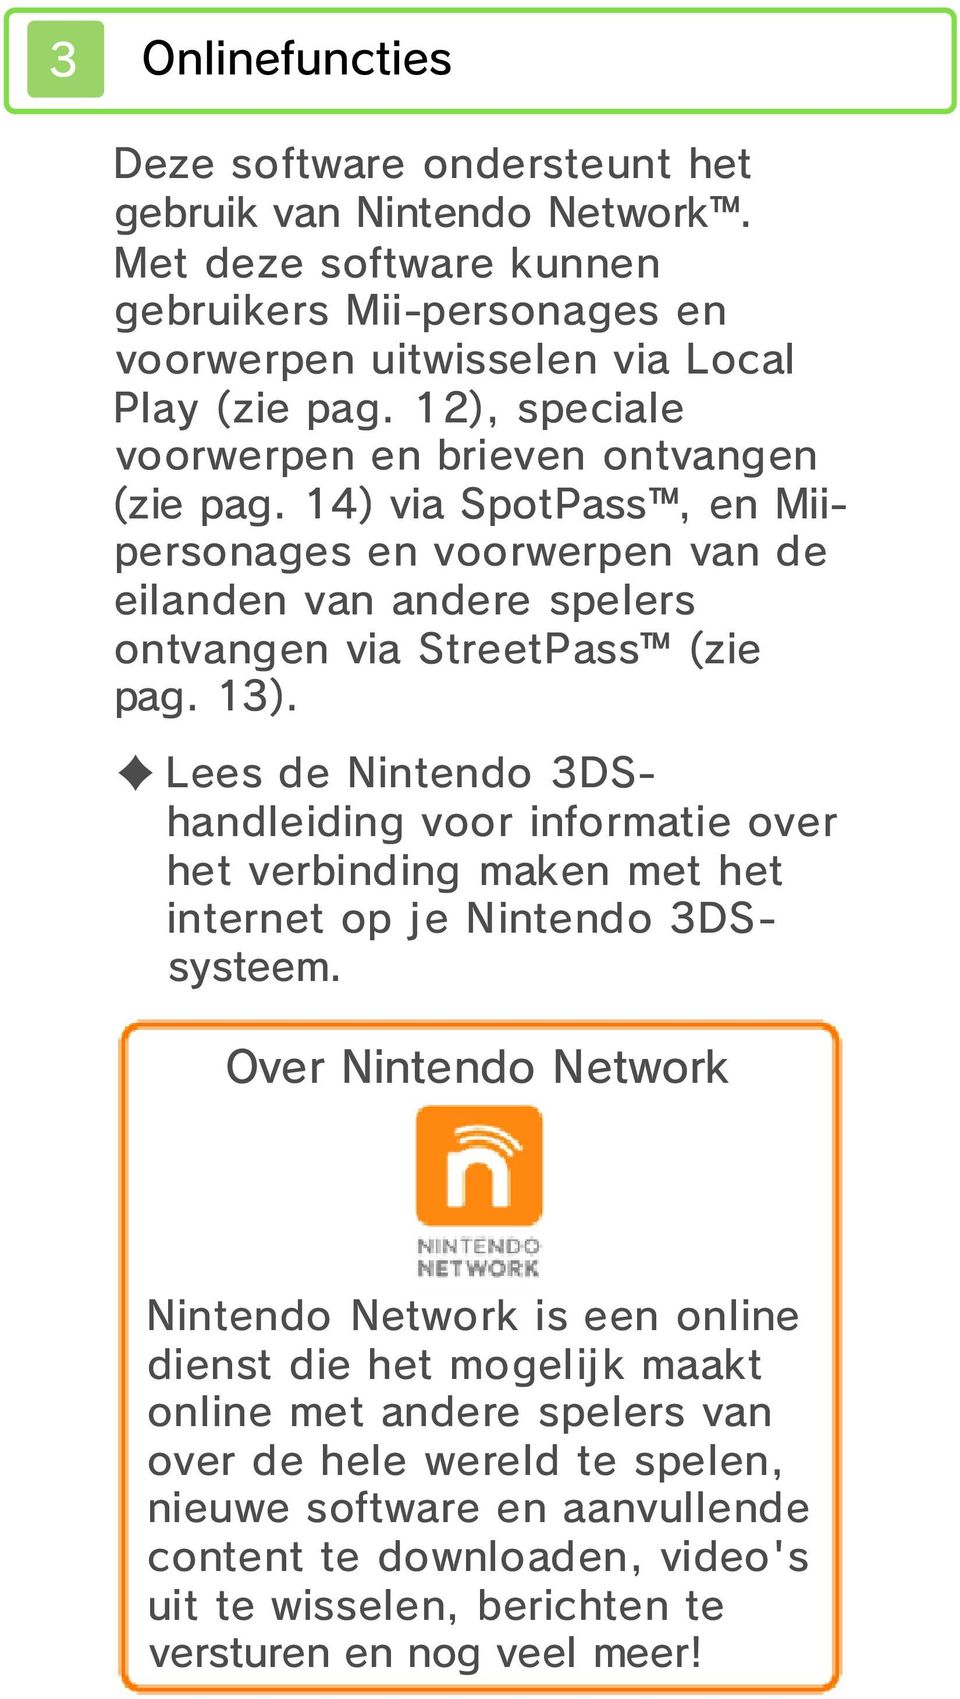 Lees de Nintendo 3DShandleiding voor informatie over het verbinding maken met het internet op je Nintendo 3DSsysteem.